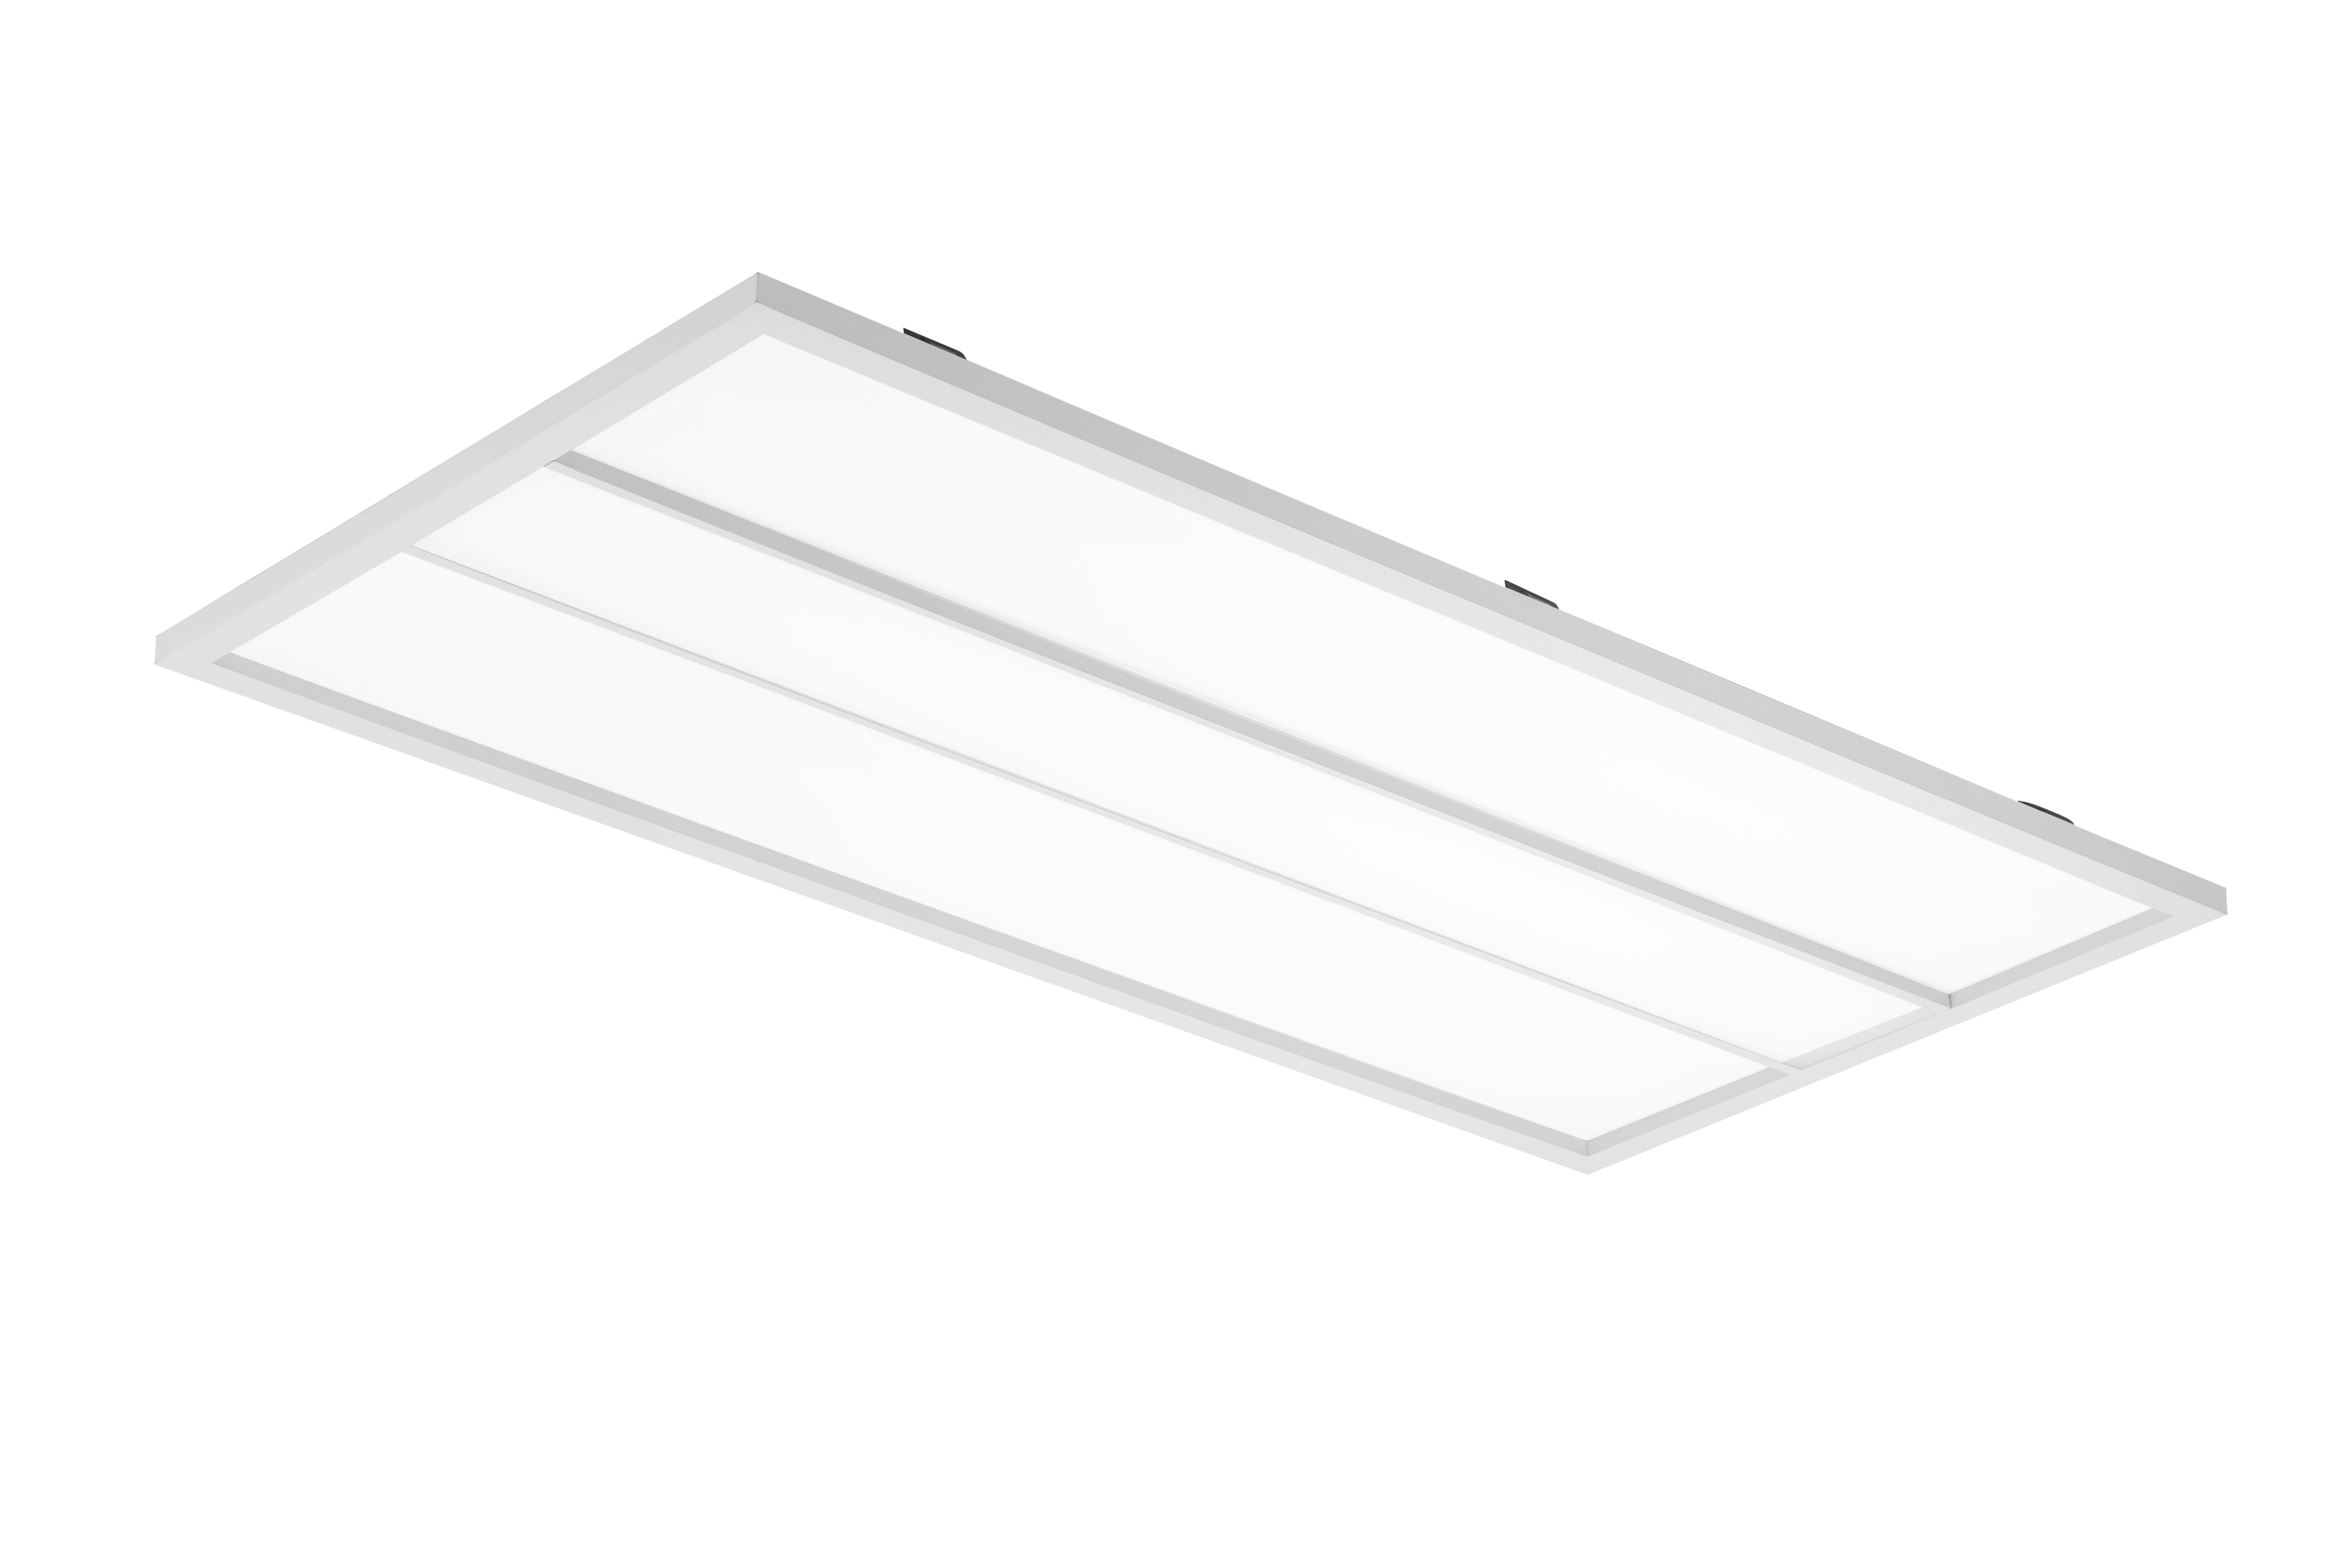 Panel Light Troffer Design LED lamp